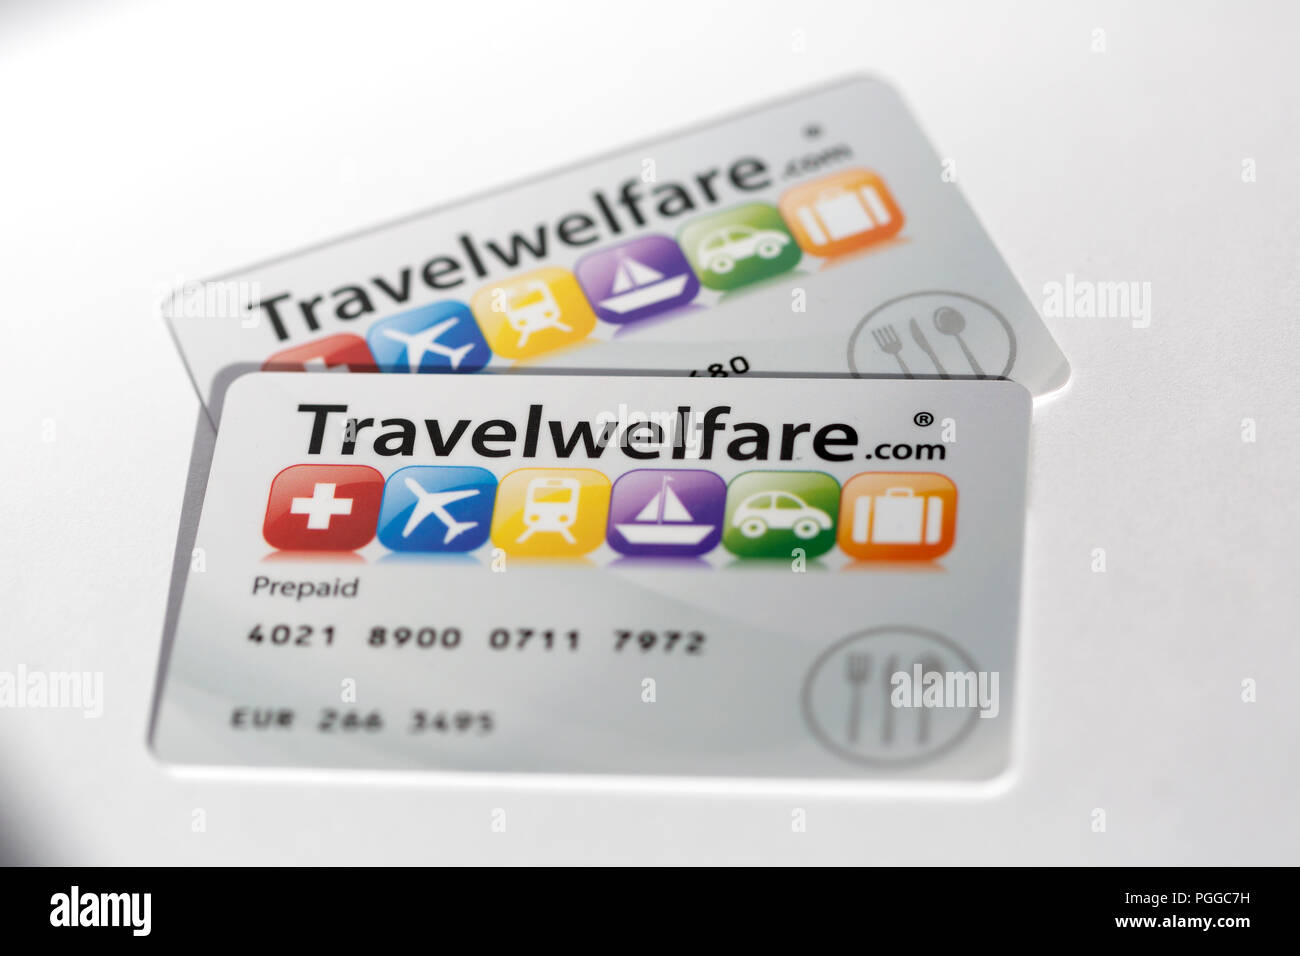 Benessere viaggi Carte di credito.Benessere Viaggio fornire VISA ha approvato "gift card' buoni di stile che incorpora la tecnologia a banda magnetica. Foto Stock